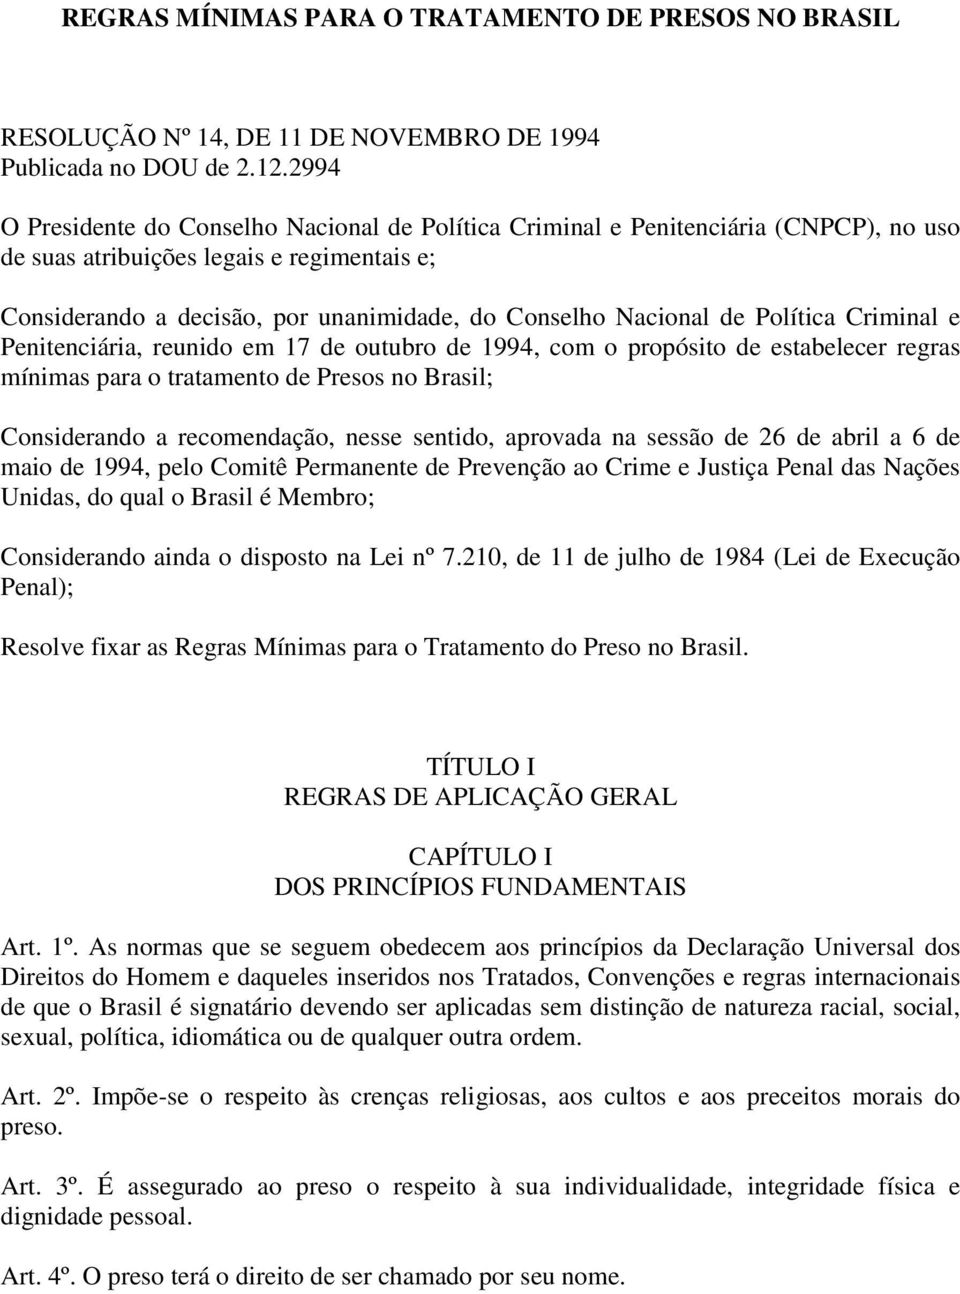 de Política Criminal e Penitenciária, reunido em 17 de outubro de 1994, com o propósito de estabelecer regras mínimas para o tratamento de Presos no Brasil; Considerando a recomendação, nesse